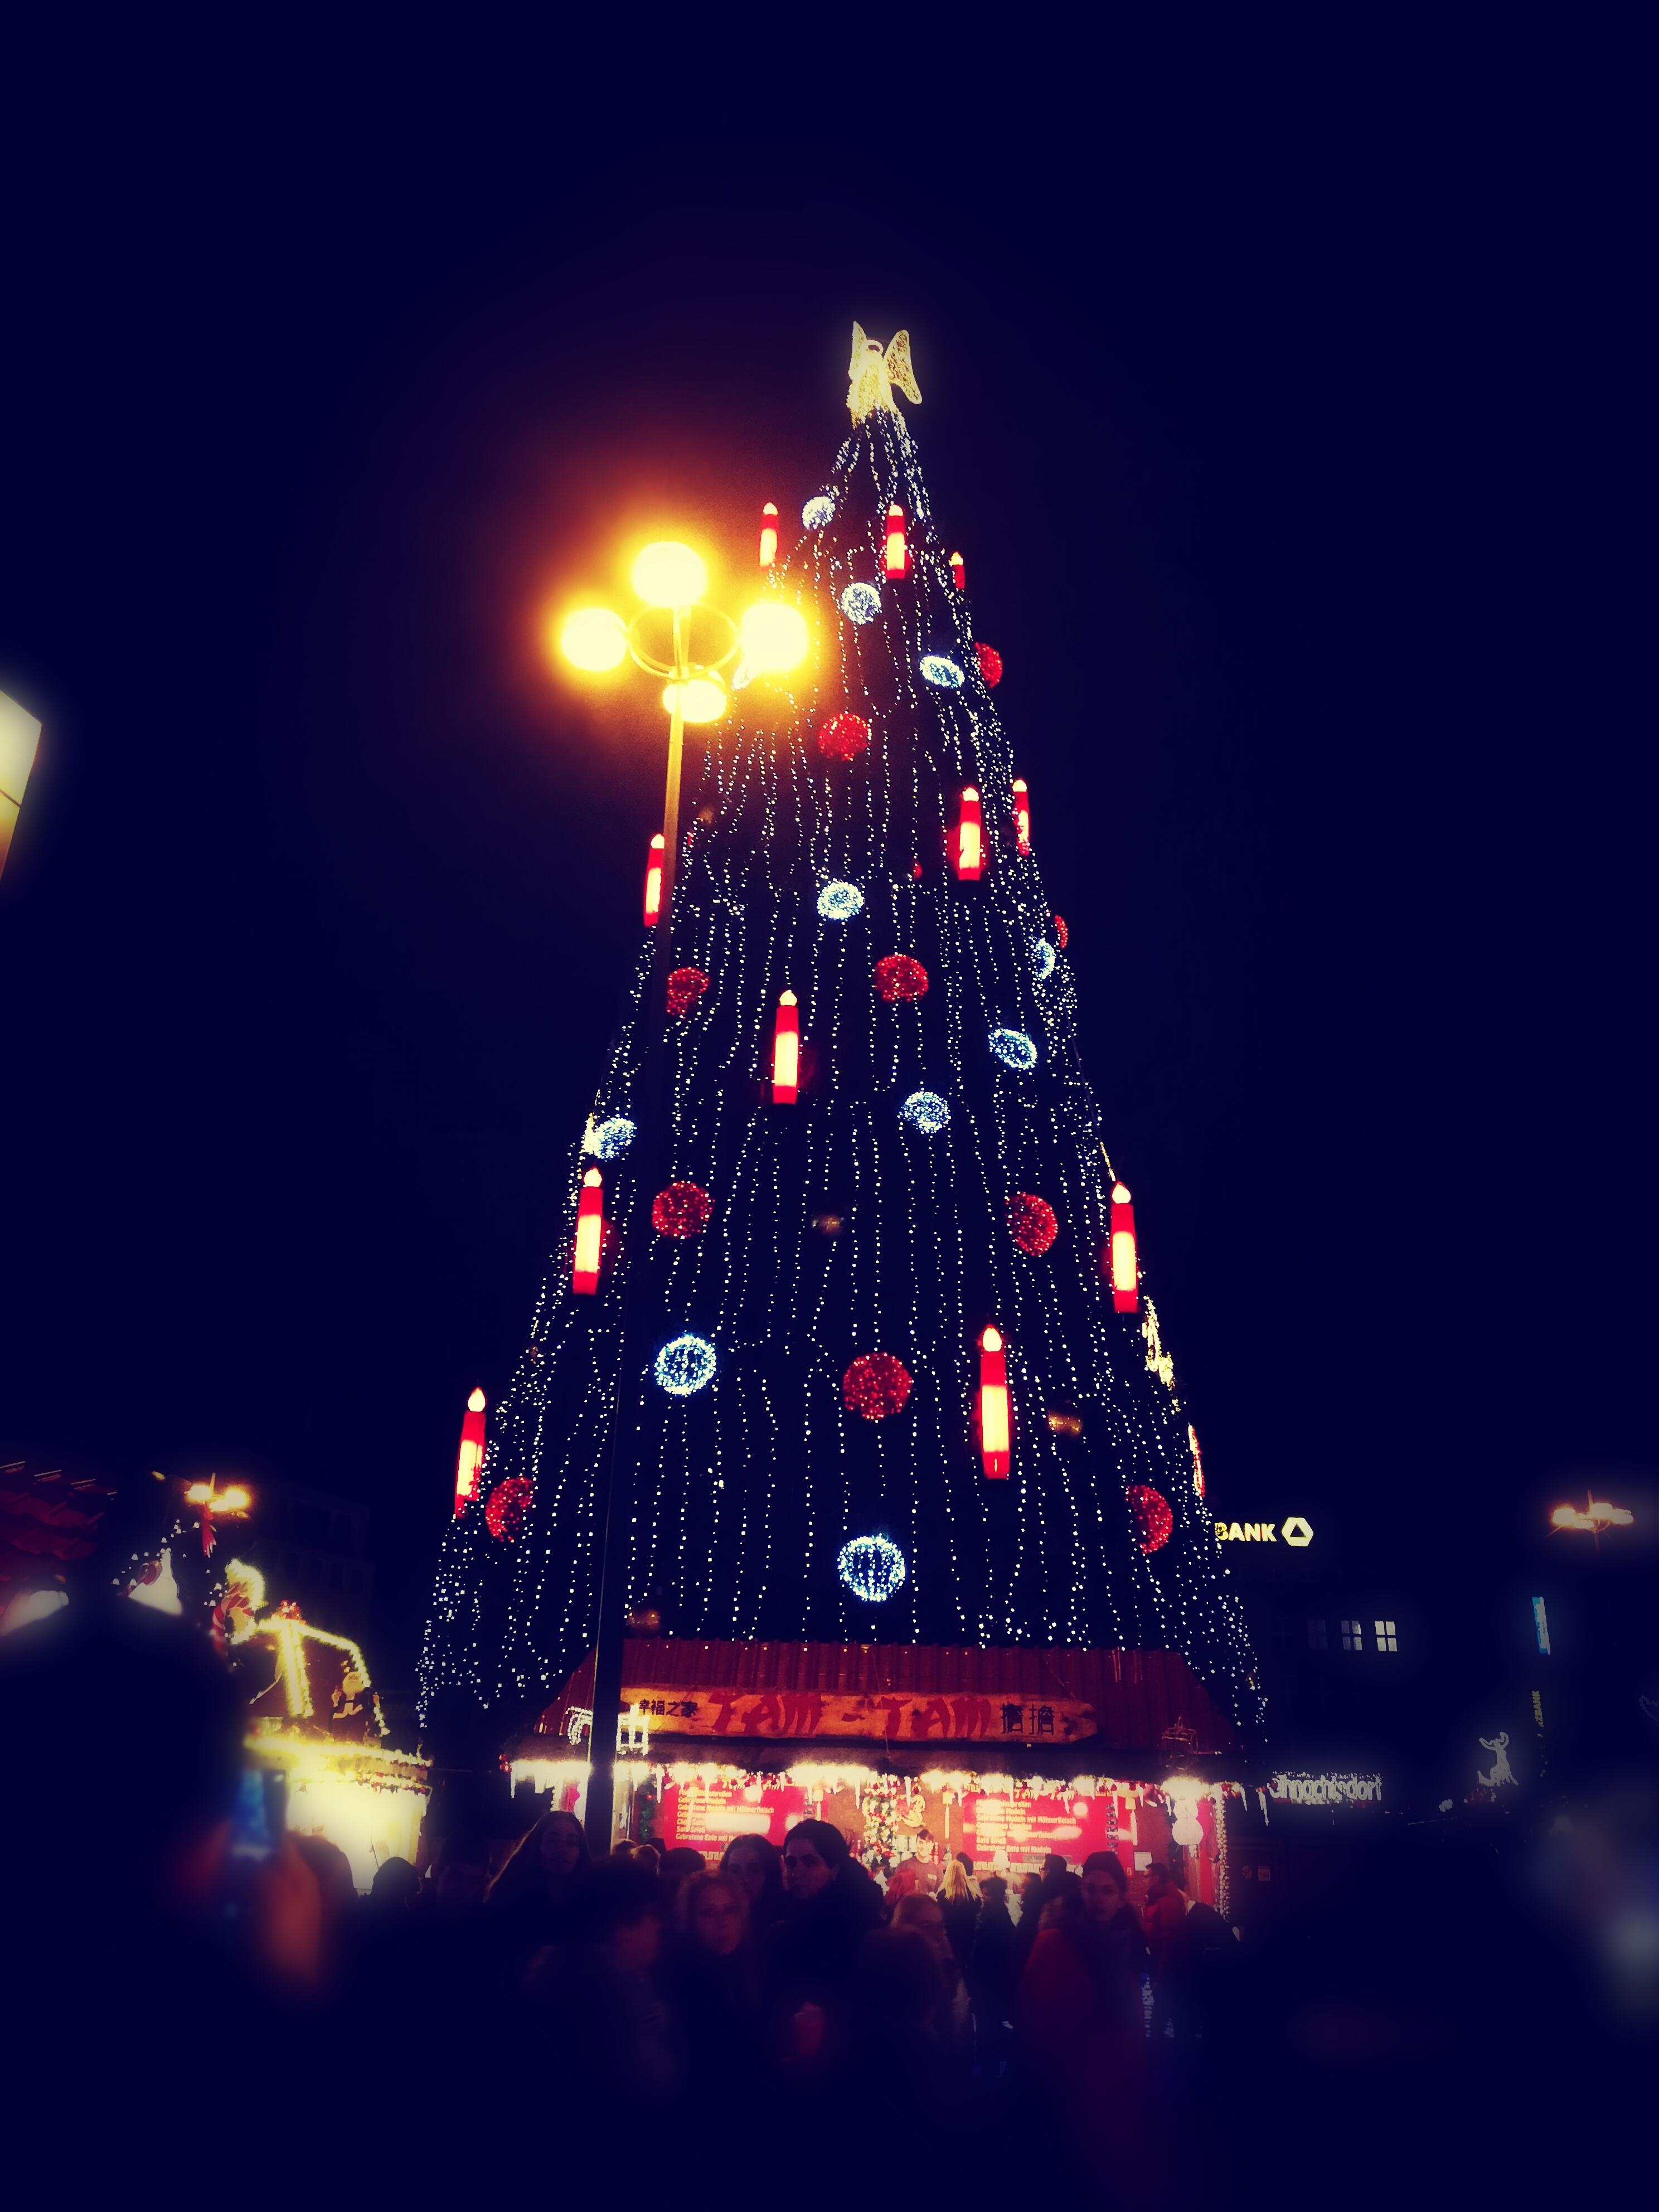 ... Der größte auf der Welt🌟
#Weihnachstbaum #shoppen #weihnachtsmarkt